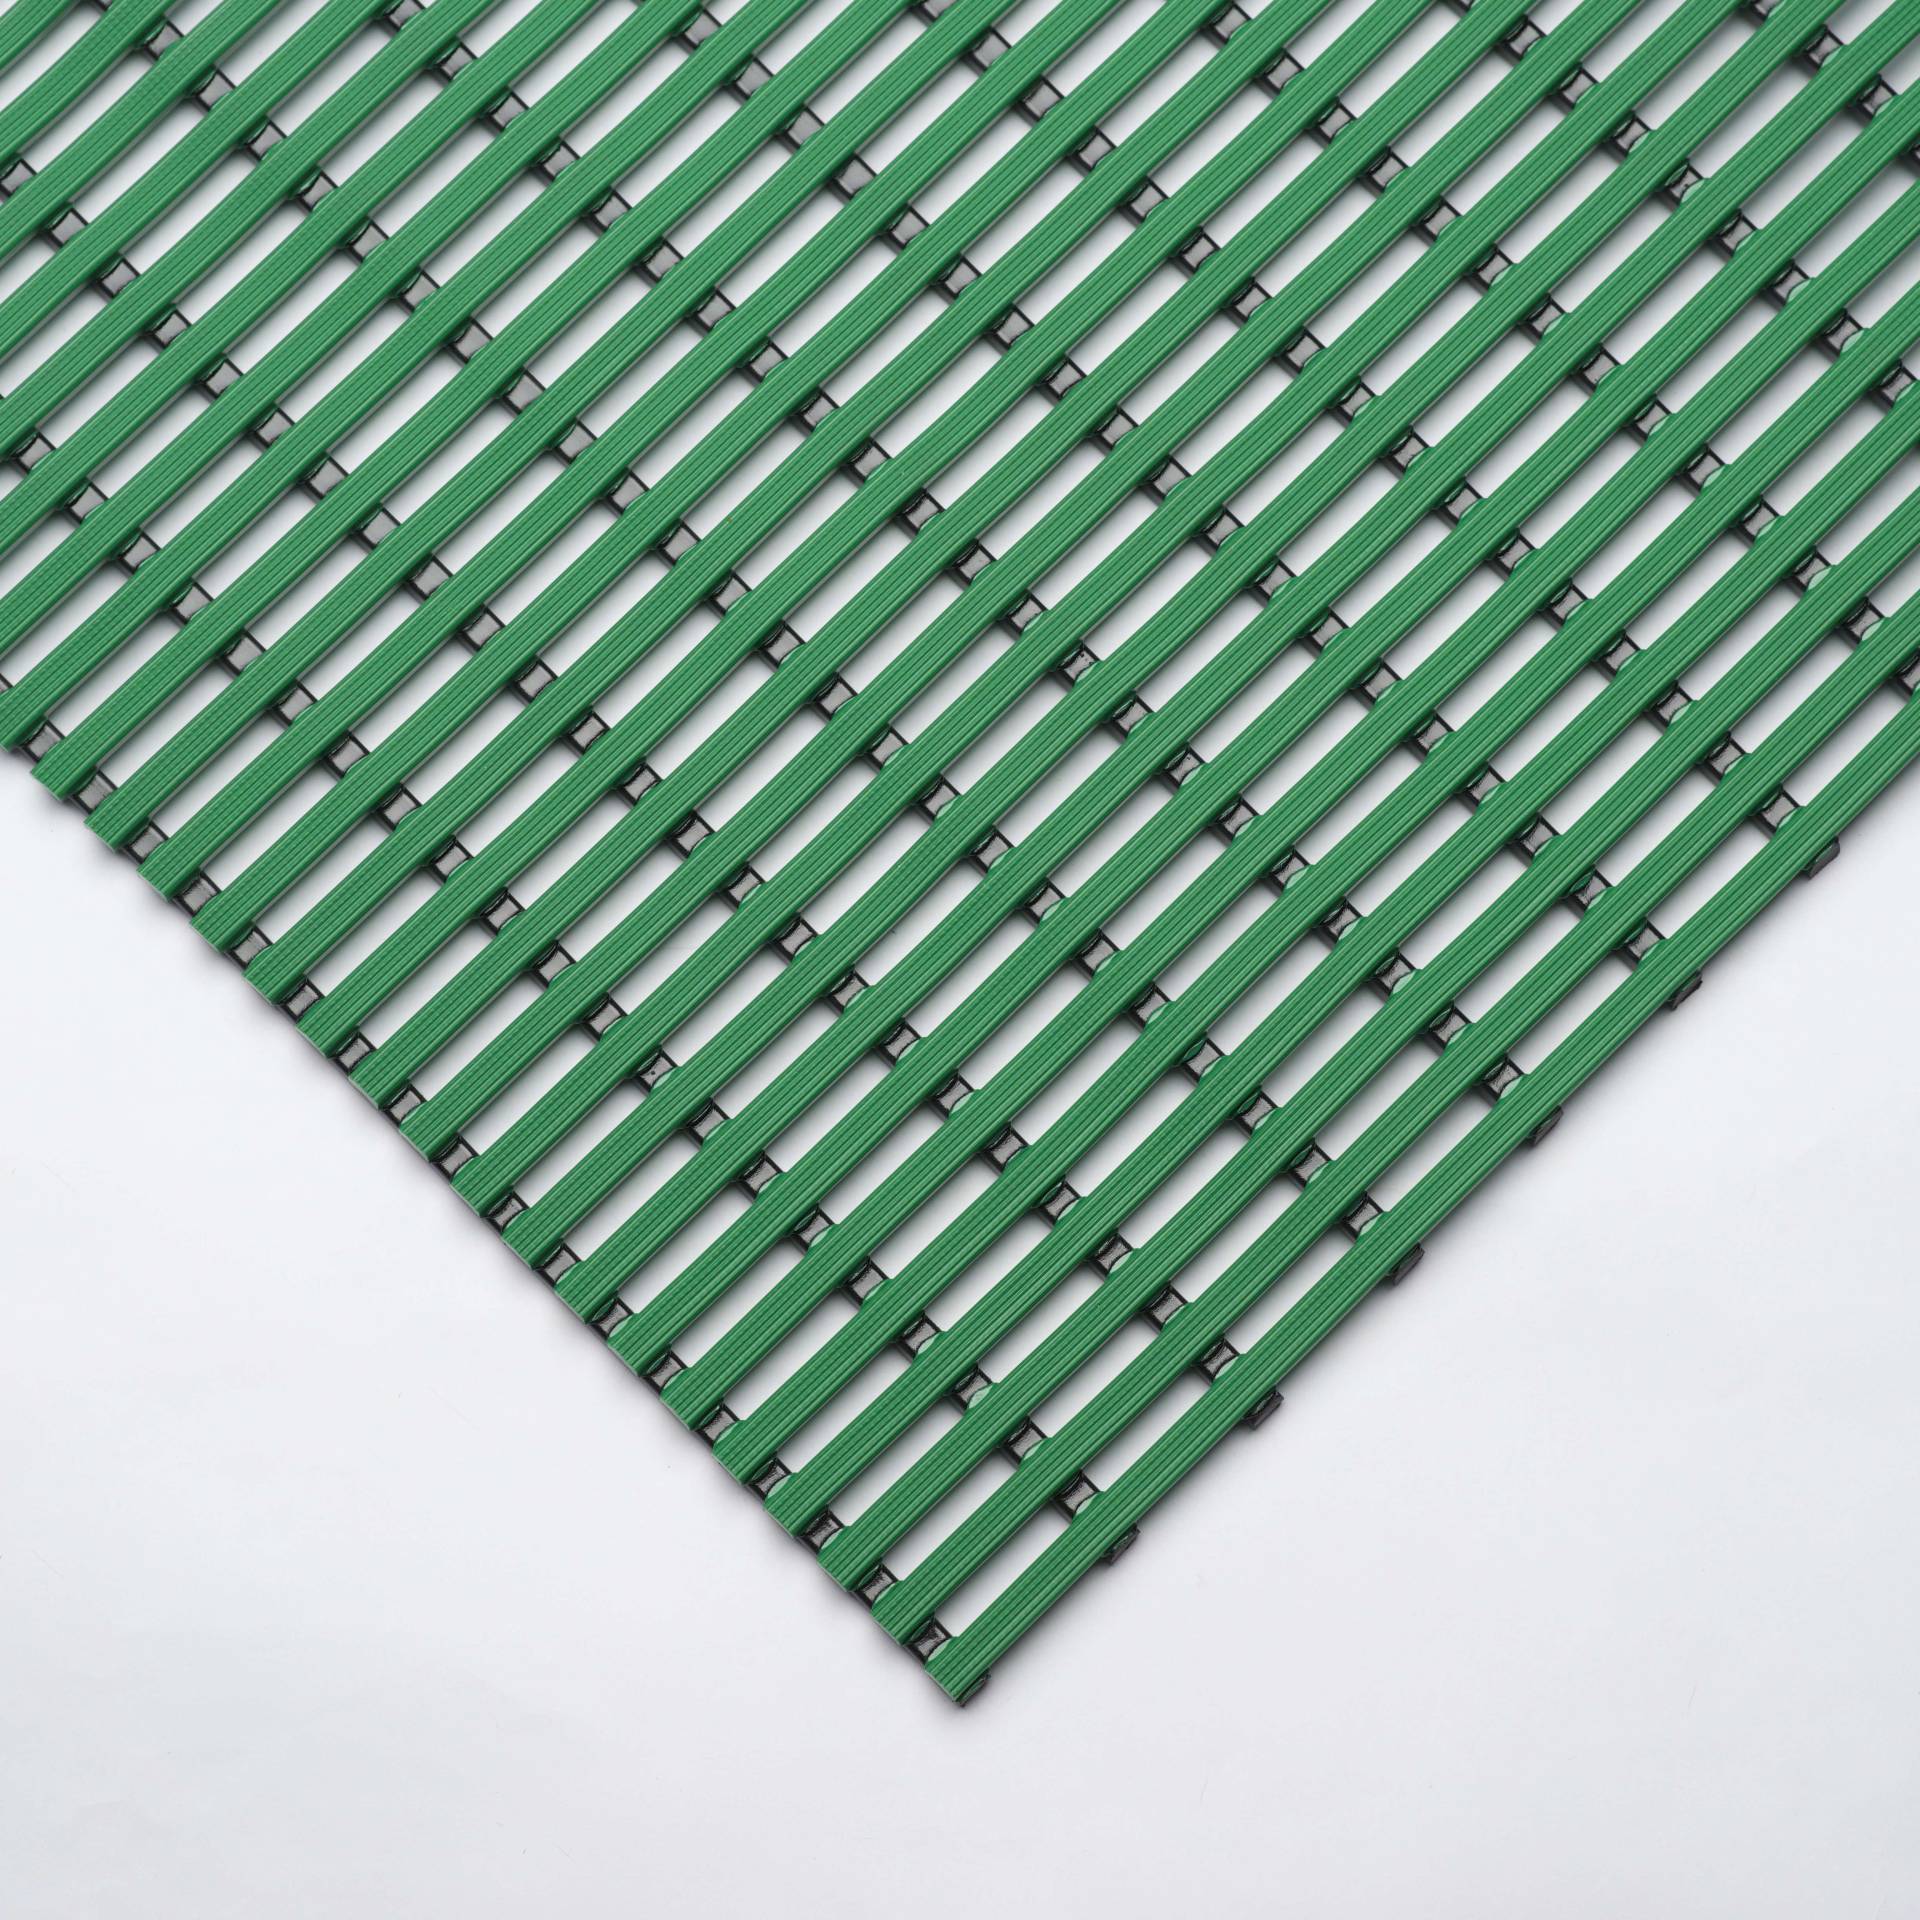 EHA Bädermatte für Nassraum, 120 cm, Grün von EHA